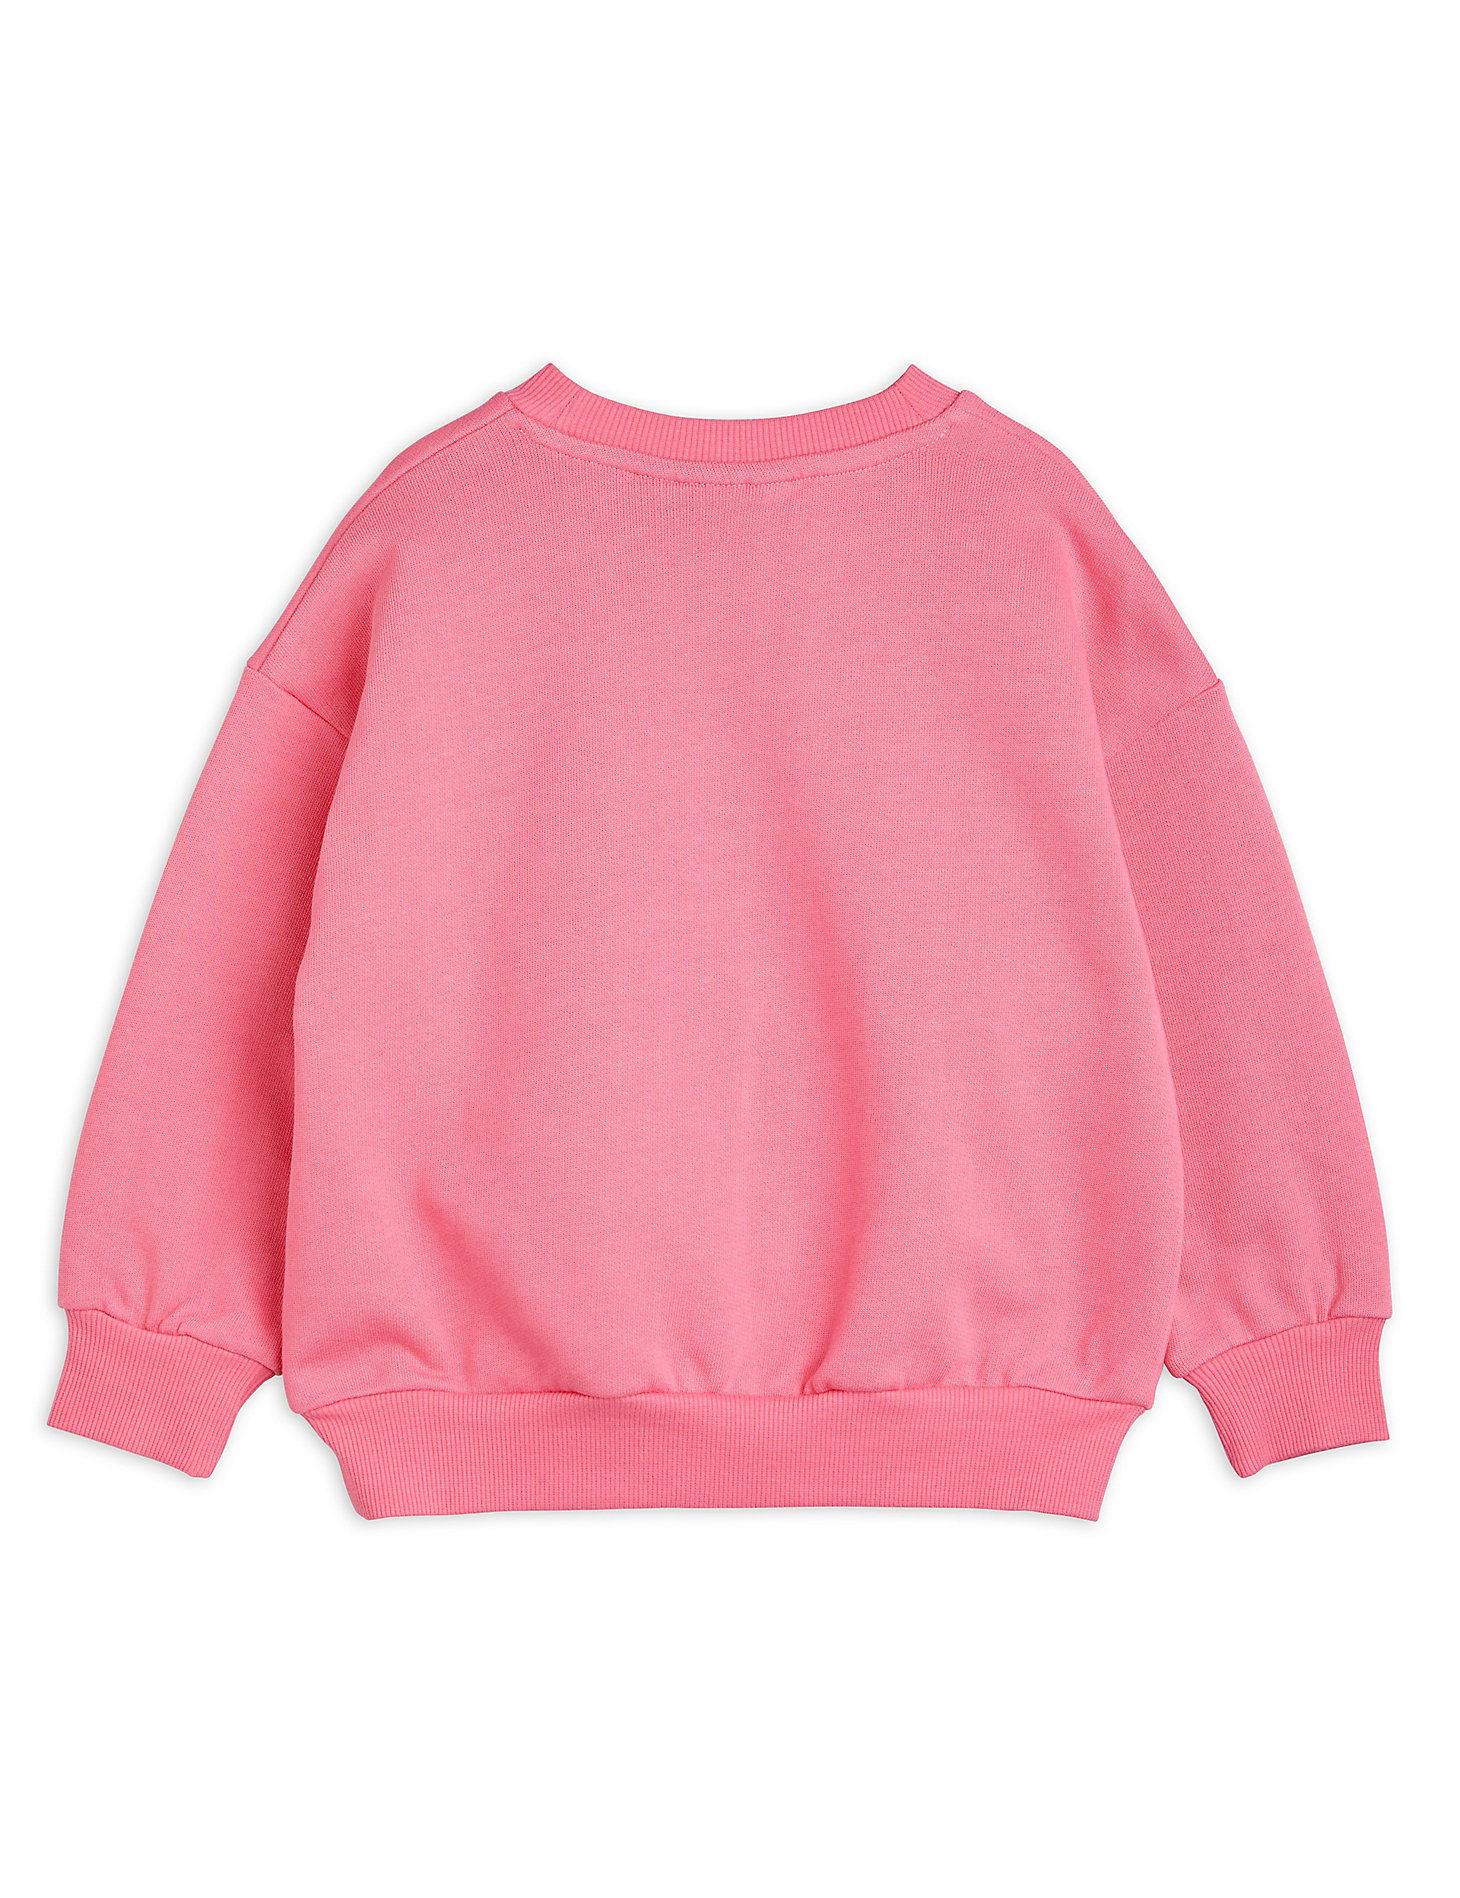 Mini Rodini x Wrangler Peace Dove Chenille Sweatshirt in Pink alternative view 1